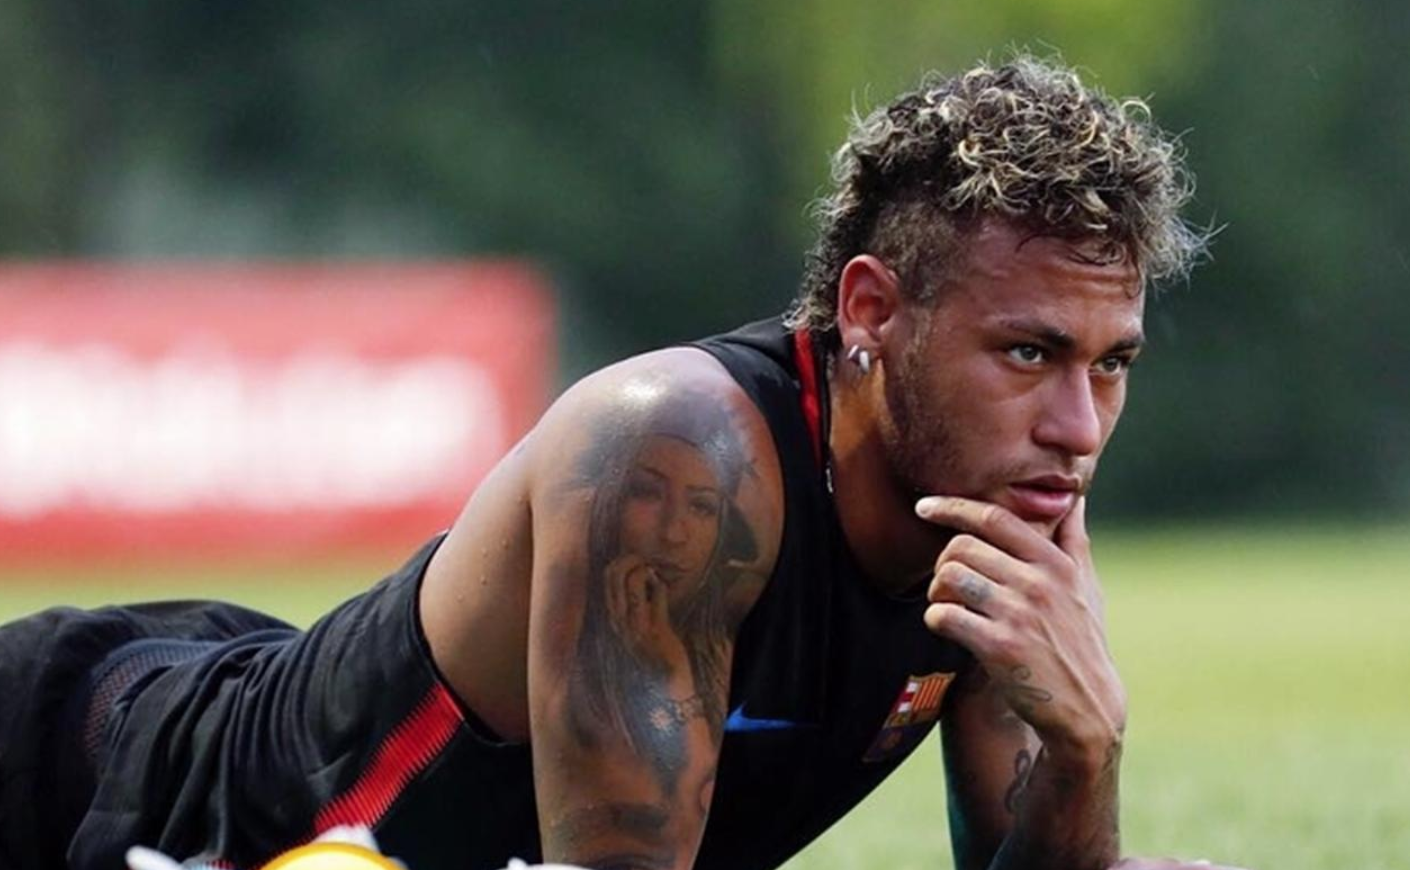 サッカー選手はなぜ腕にタトゥー 刺青 が多いのか その意味や理由について